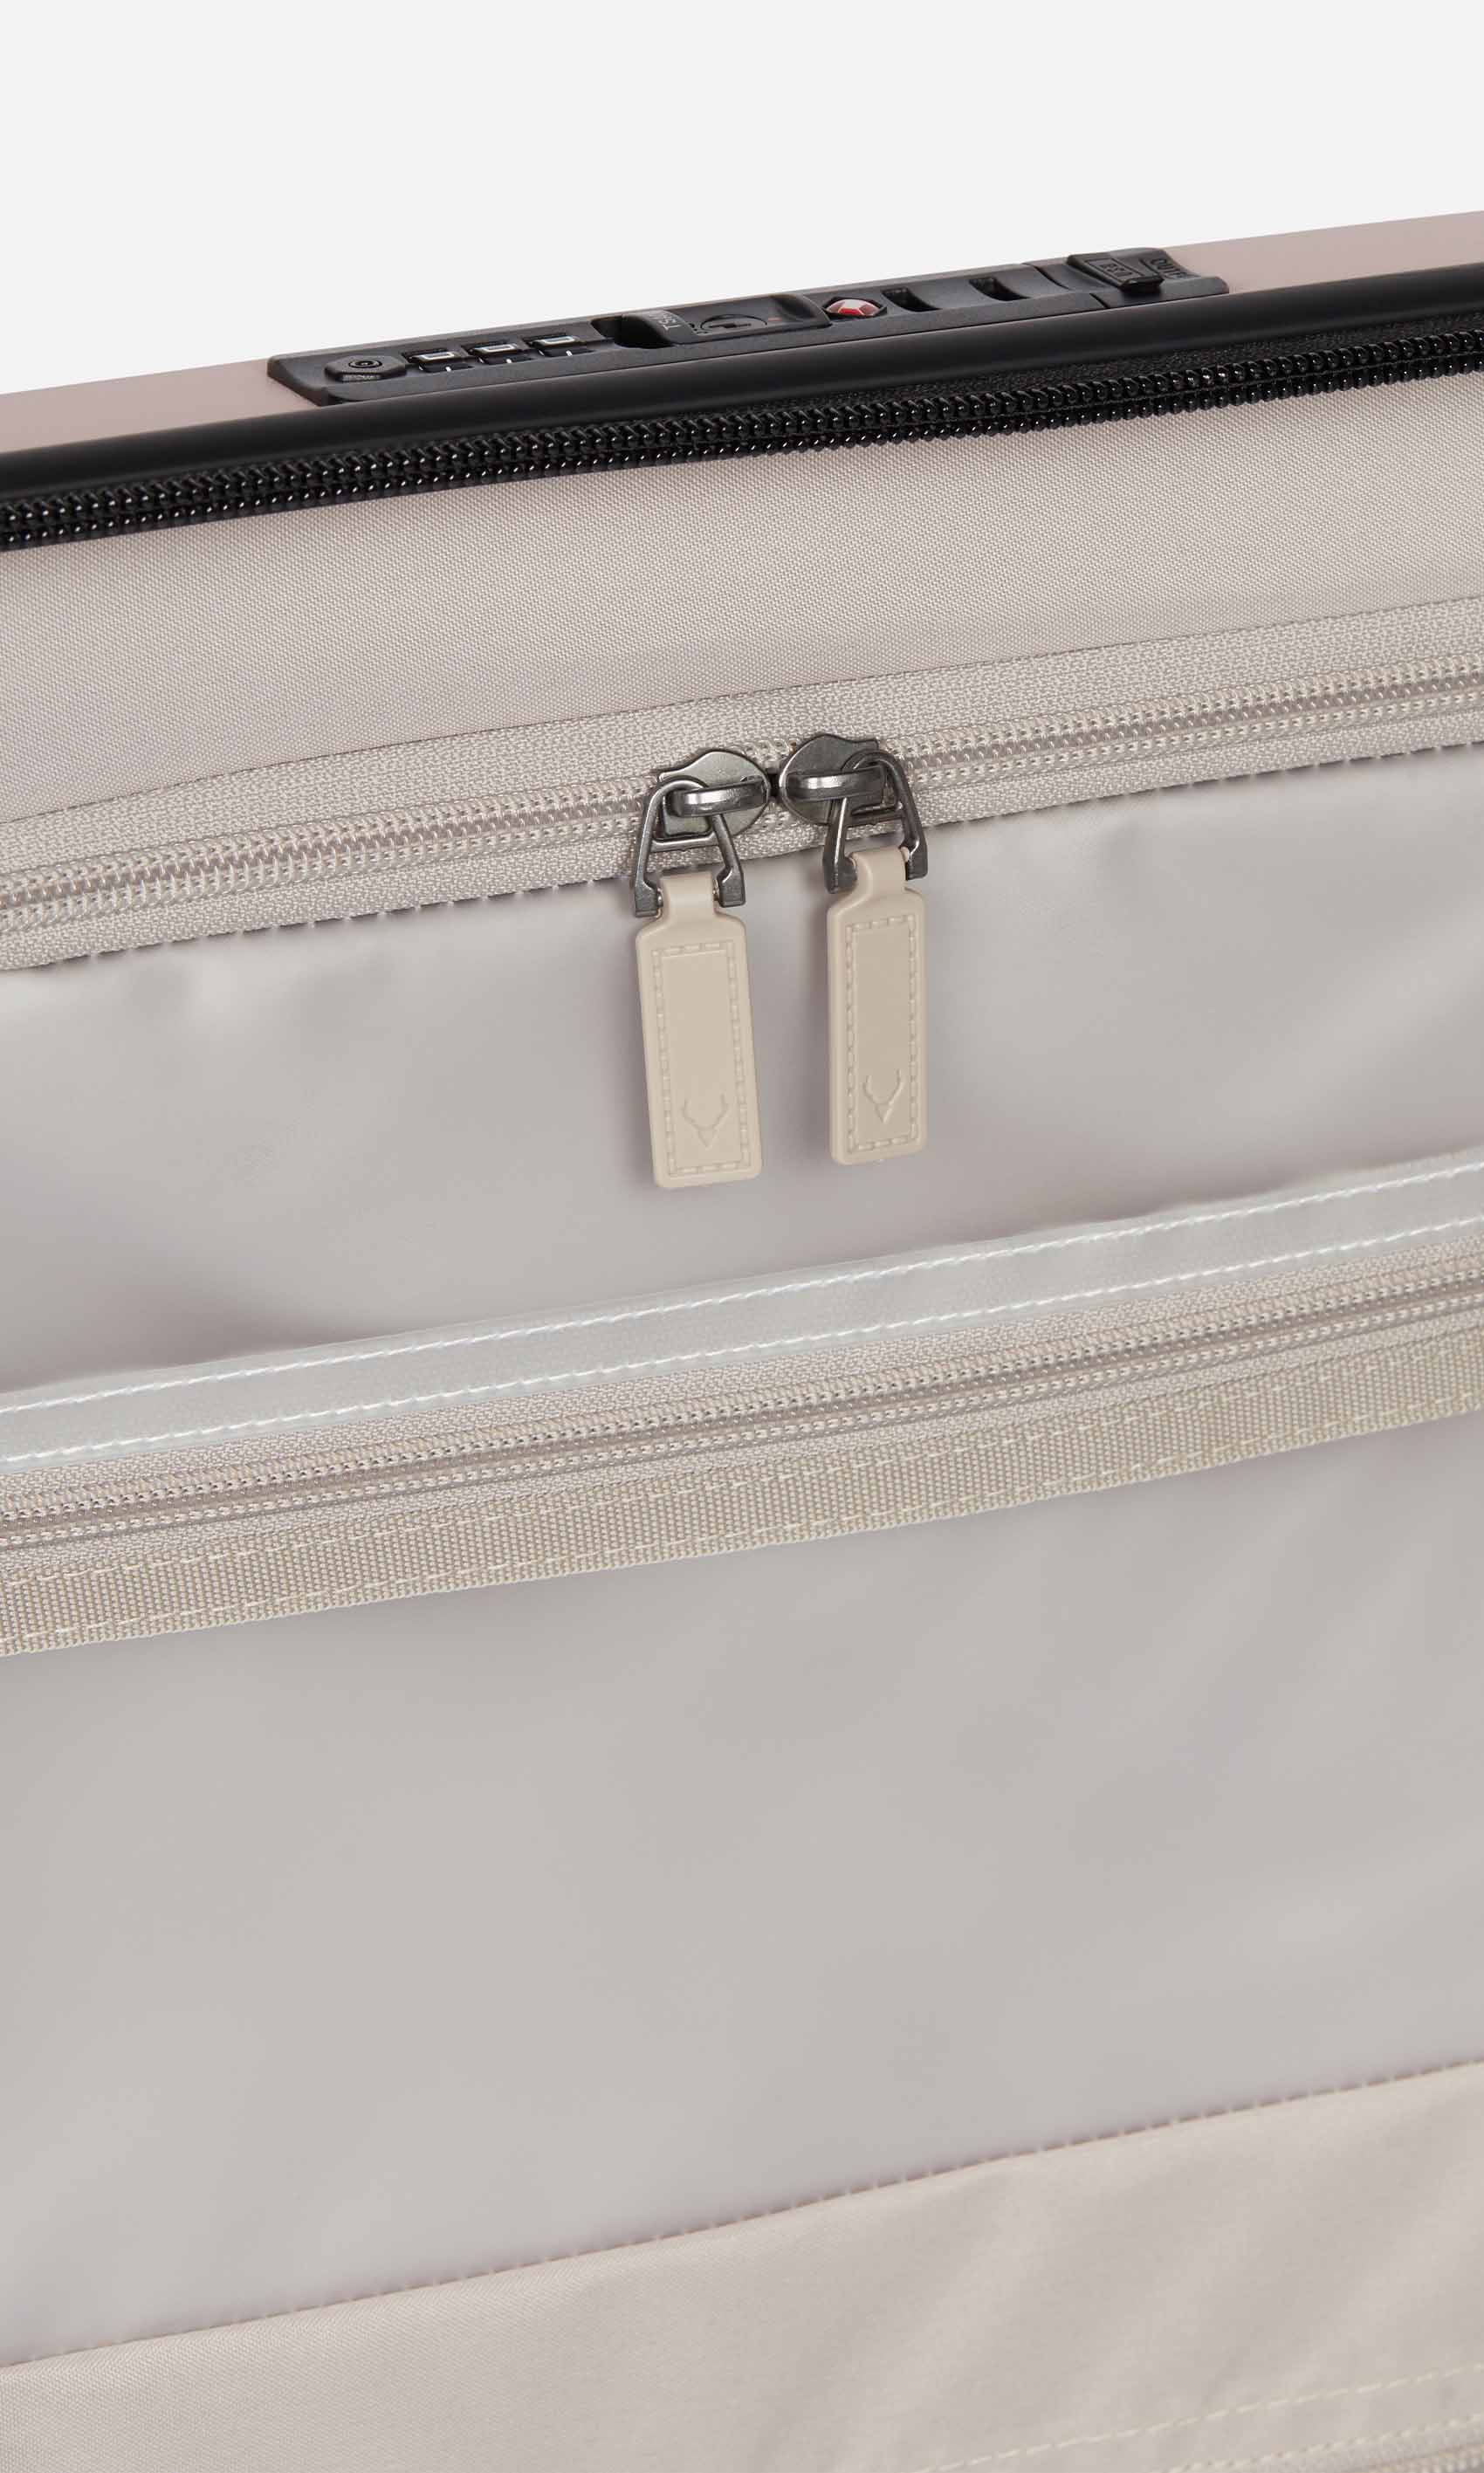 Antler Luggage -  Stamford cabin in putty - Hard Suitcases Stamford Cabin Suitcase Putty (Pink) | Hard Luggage | Antler UK